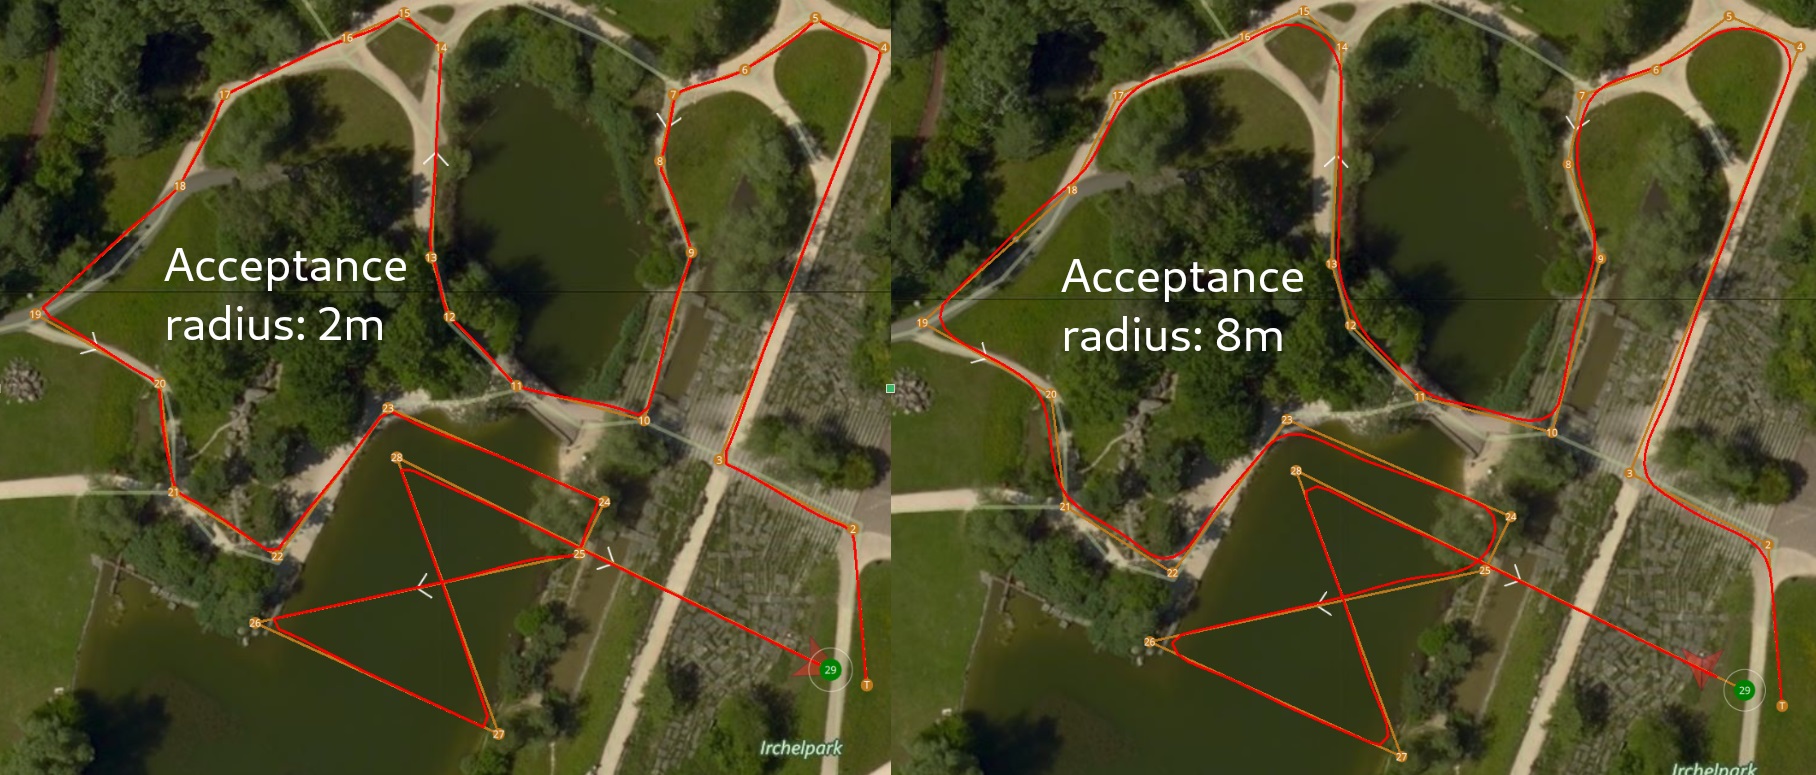 acceptance radius comparison